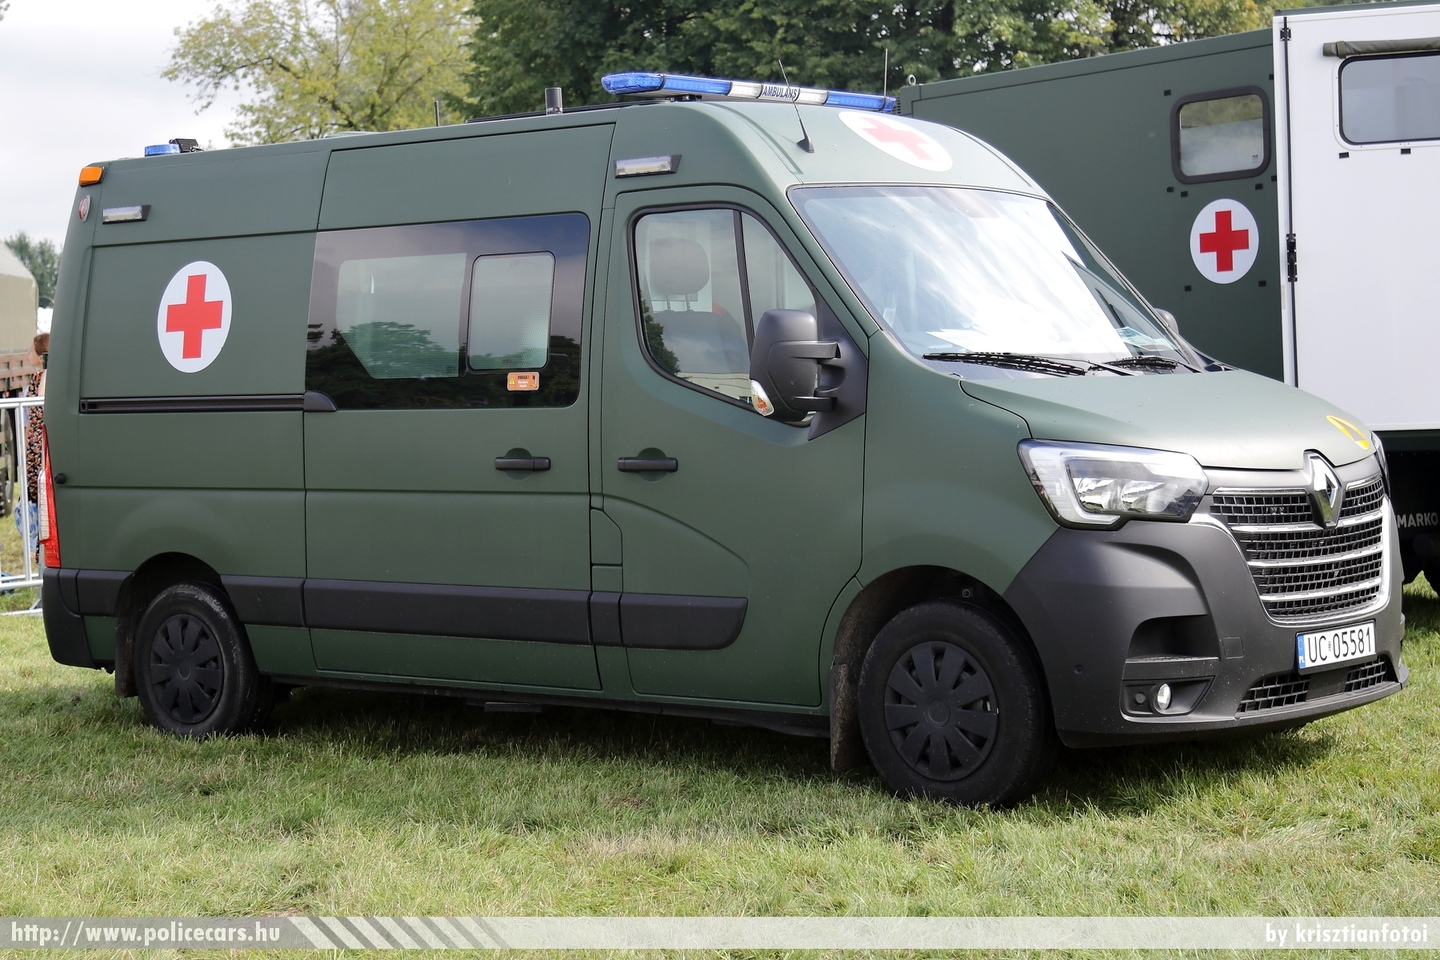 Renault Master, fotó: krisztianfotoi
Keywords: lengyel Lengyelország polish Poland mentő mentőautó ambulance military katonai